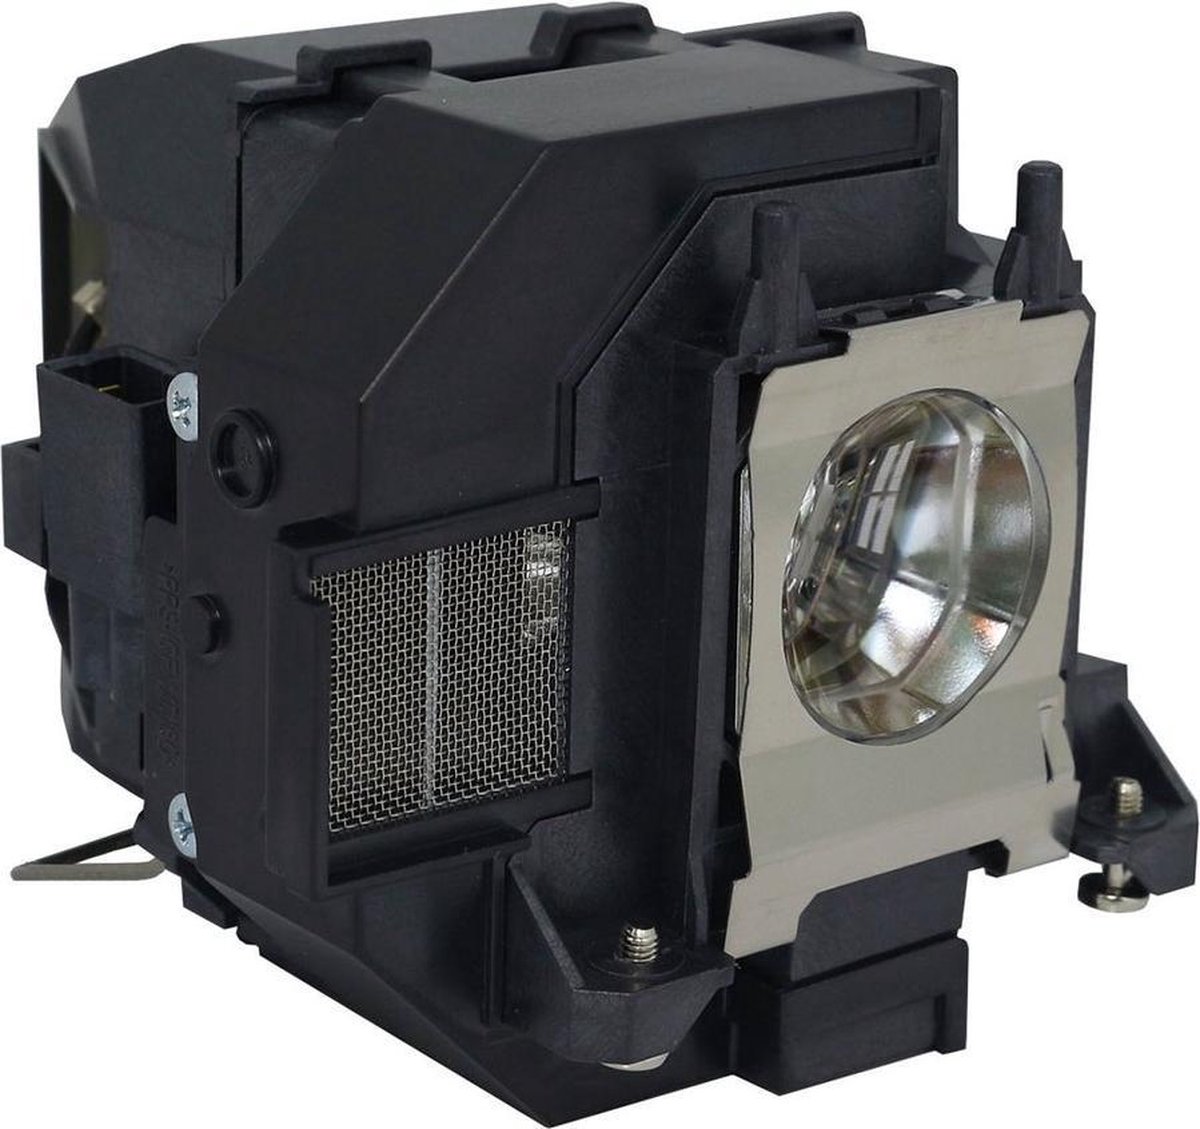 Beamerlamp geschikt voor de EPSON EB-2165W beamer, lamp code LP95 / V13H010L95. Bevat originele NSHA lamp, prestaties gelijk aan origineel.